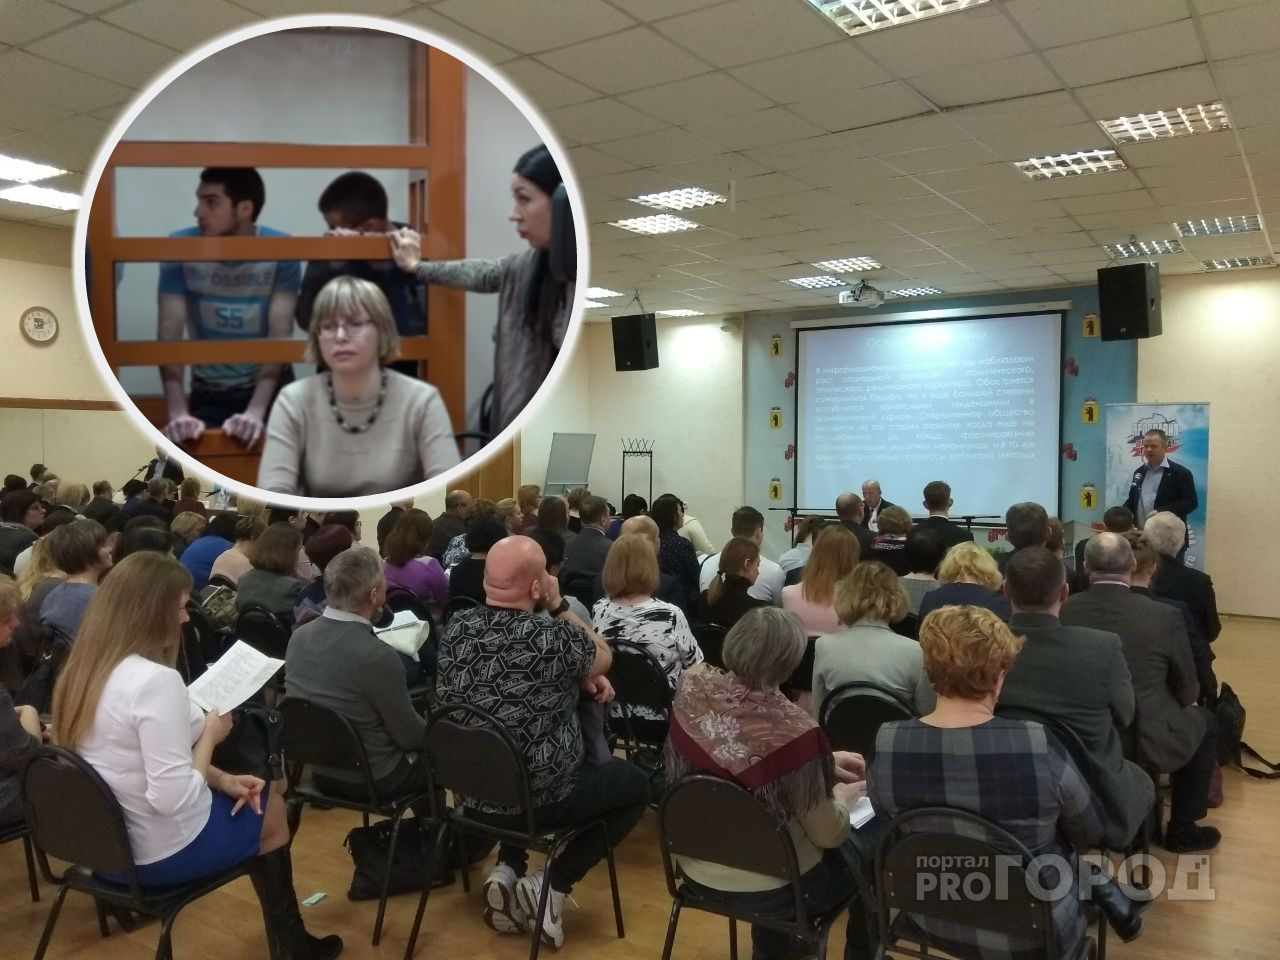 Студента поймали на пути к террористам: как вычисляют экстремистов среди молодежи в Ярославле